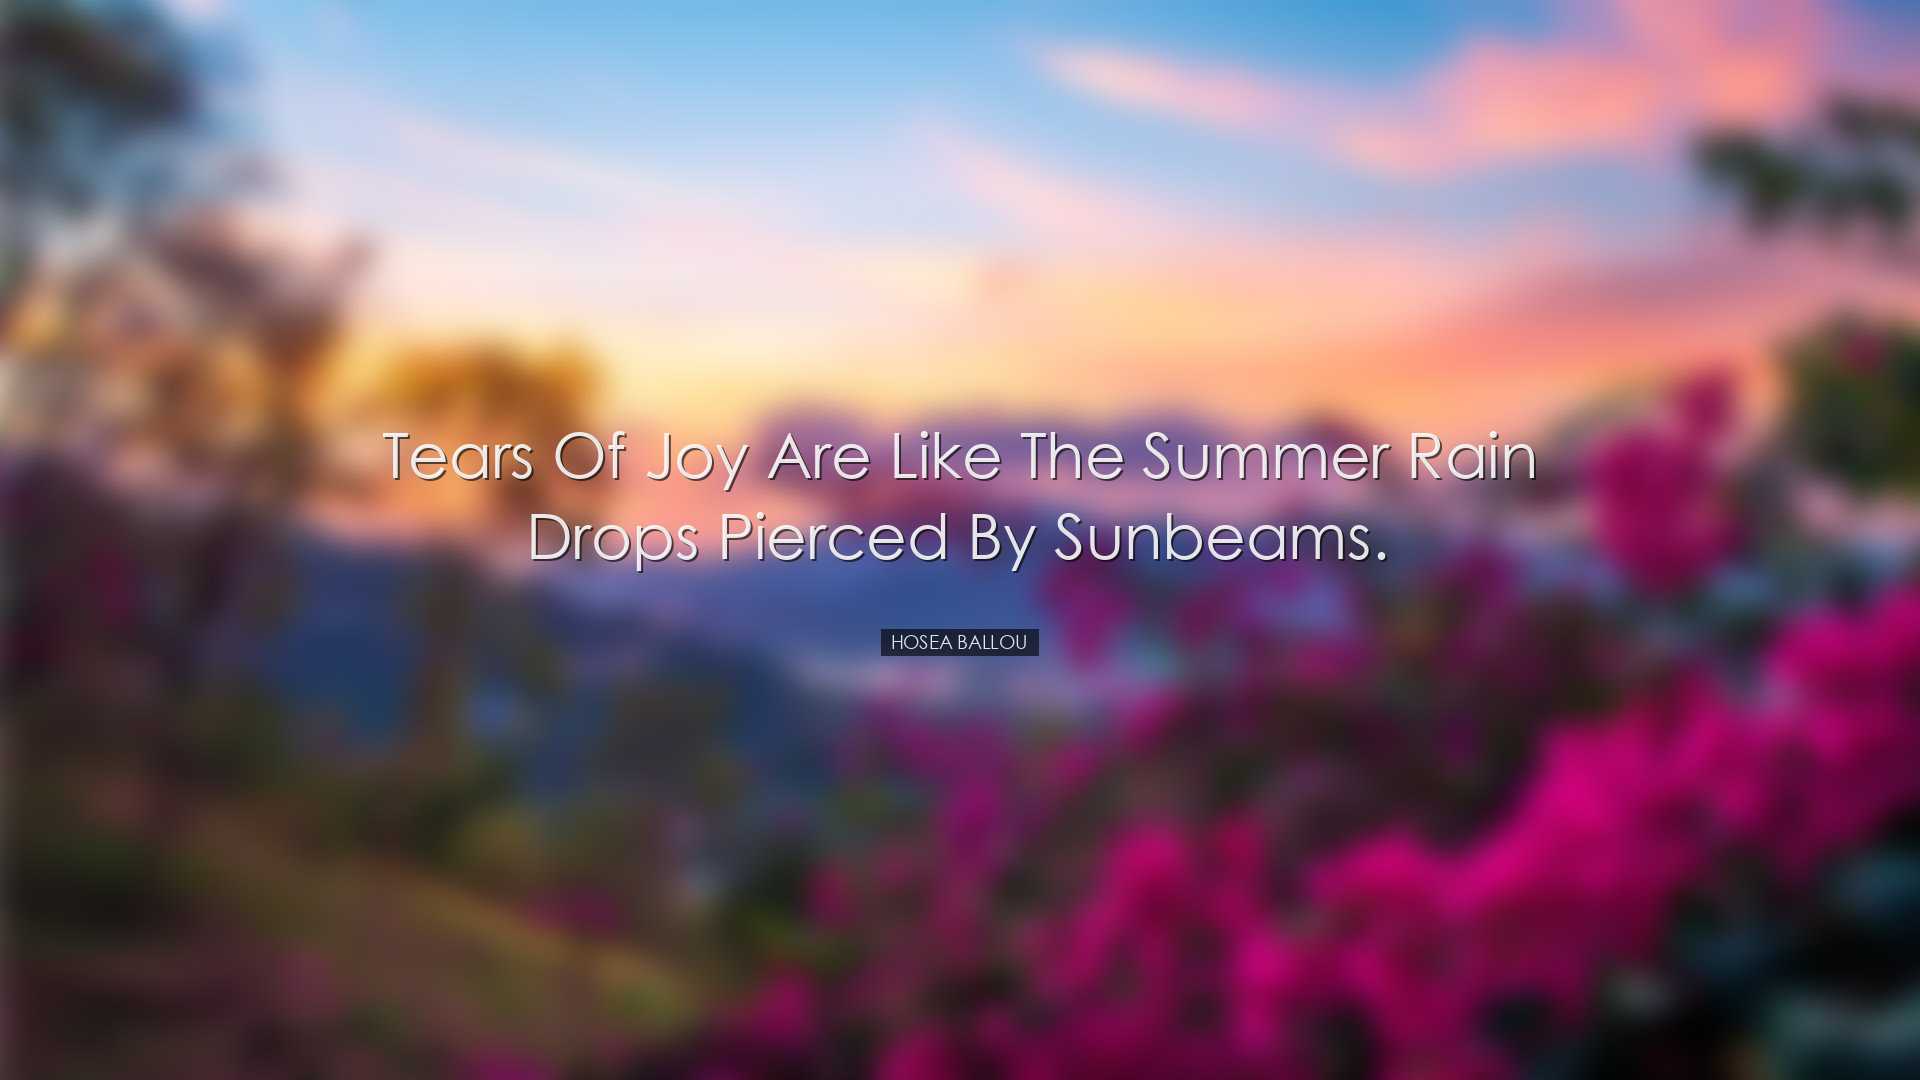 Tears of joy are like the summer rain drops pierced by sunbeams. -